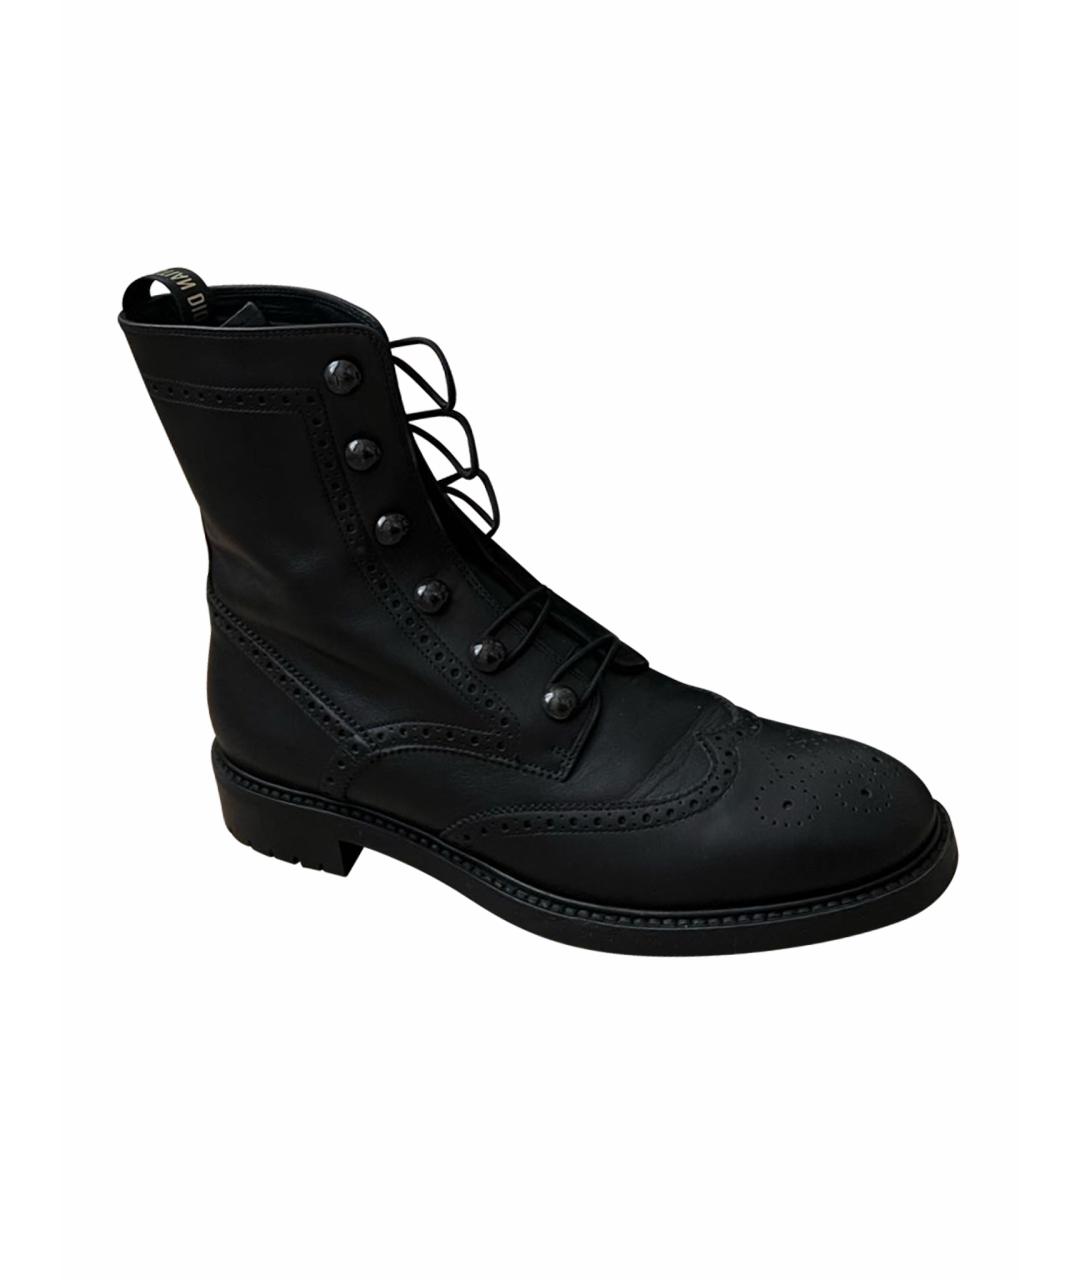 CHRISTIAN DIOR PRE-OWNED Черные кожаные ботинки, фото 1